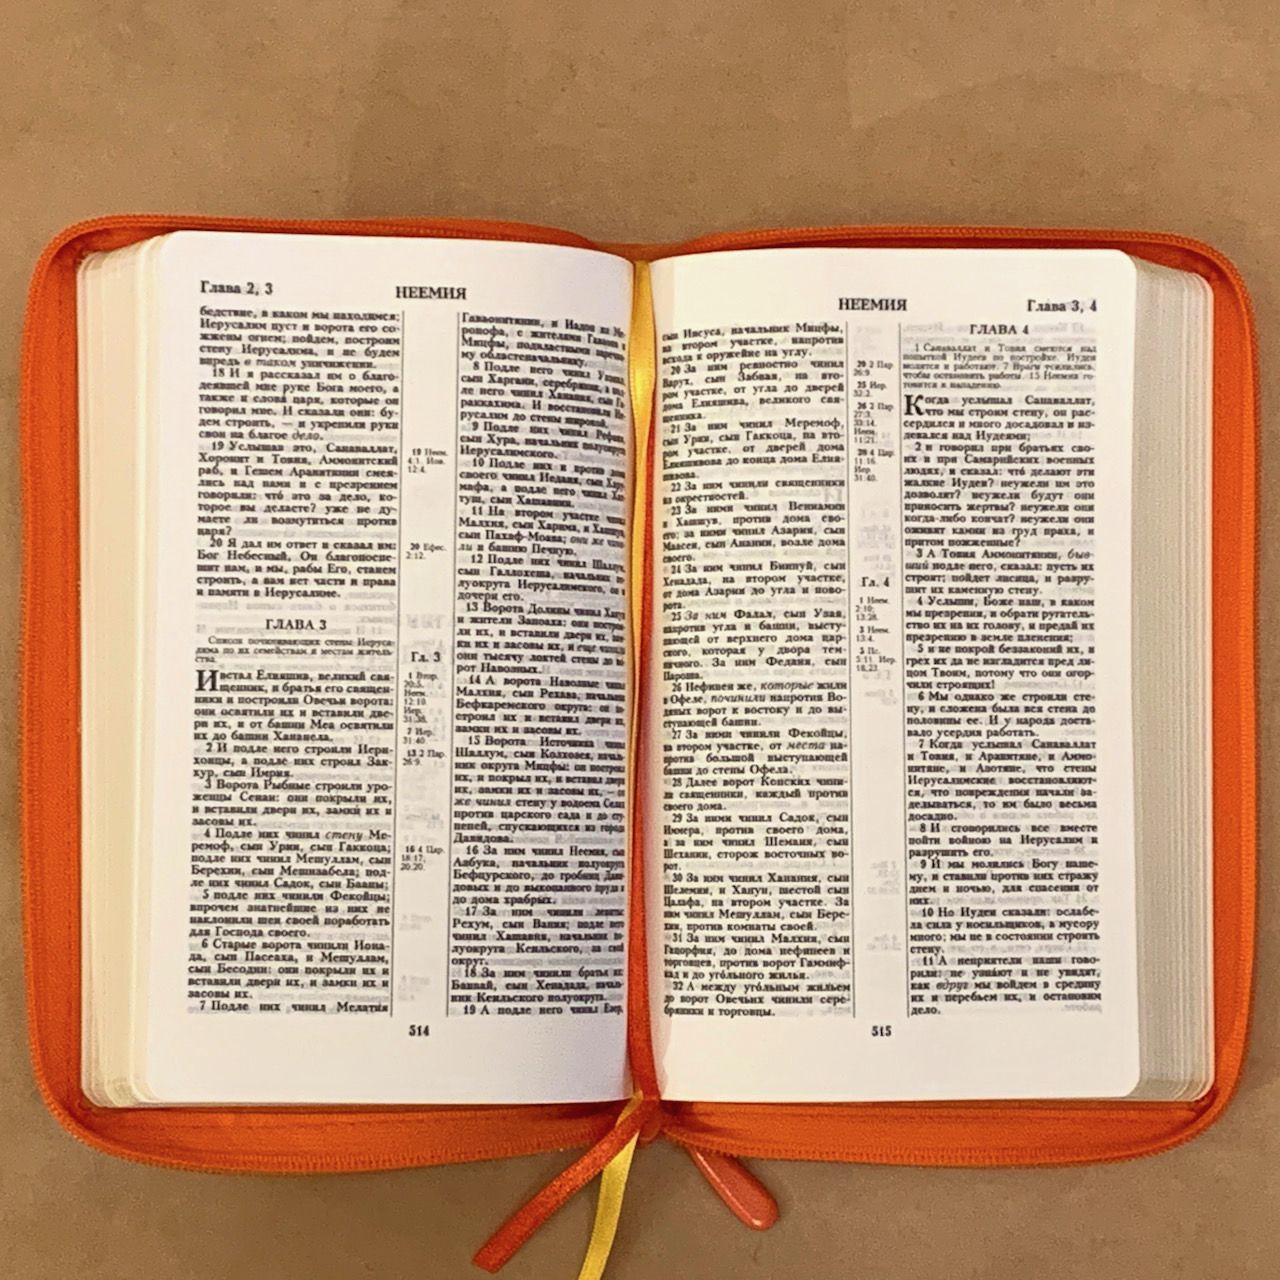 Библия 055z код H2 7076 переплет из натуральной кожи на молнии, цвет оранжевый с фактурой, дизайн голубь с веточкой термо-печать, средний формат, 143*220 мм, параллельные места по центру страницы, золотой обрез, крупный шрифт